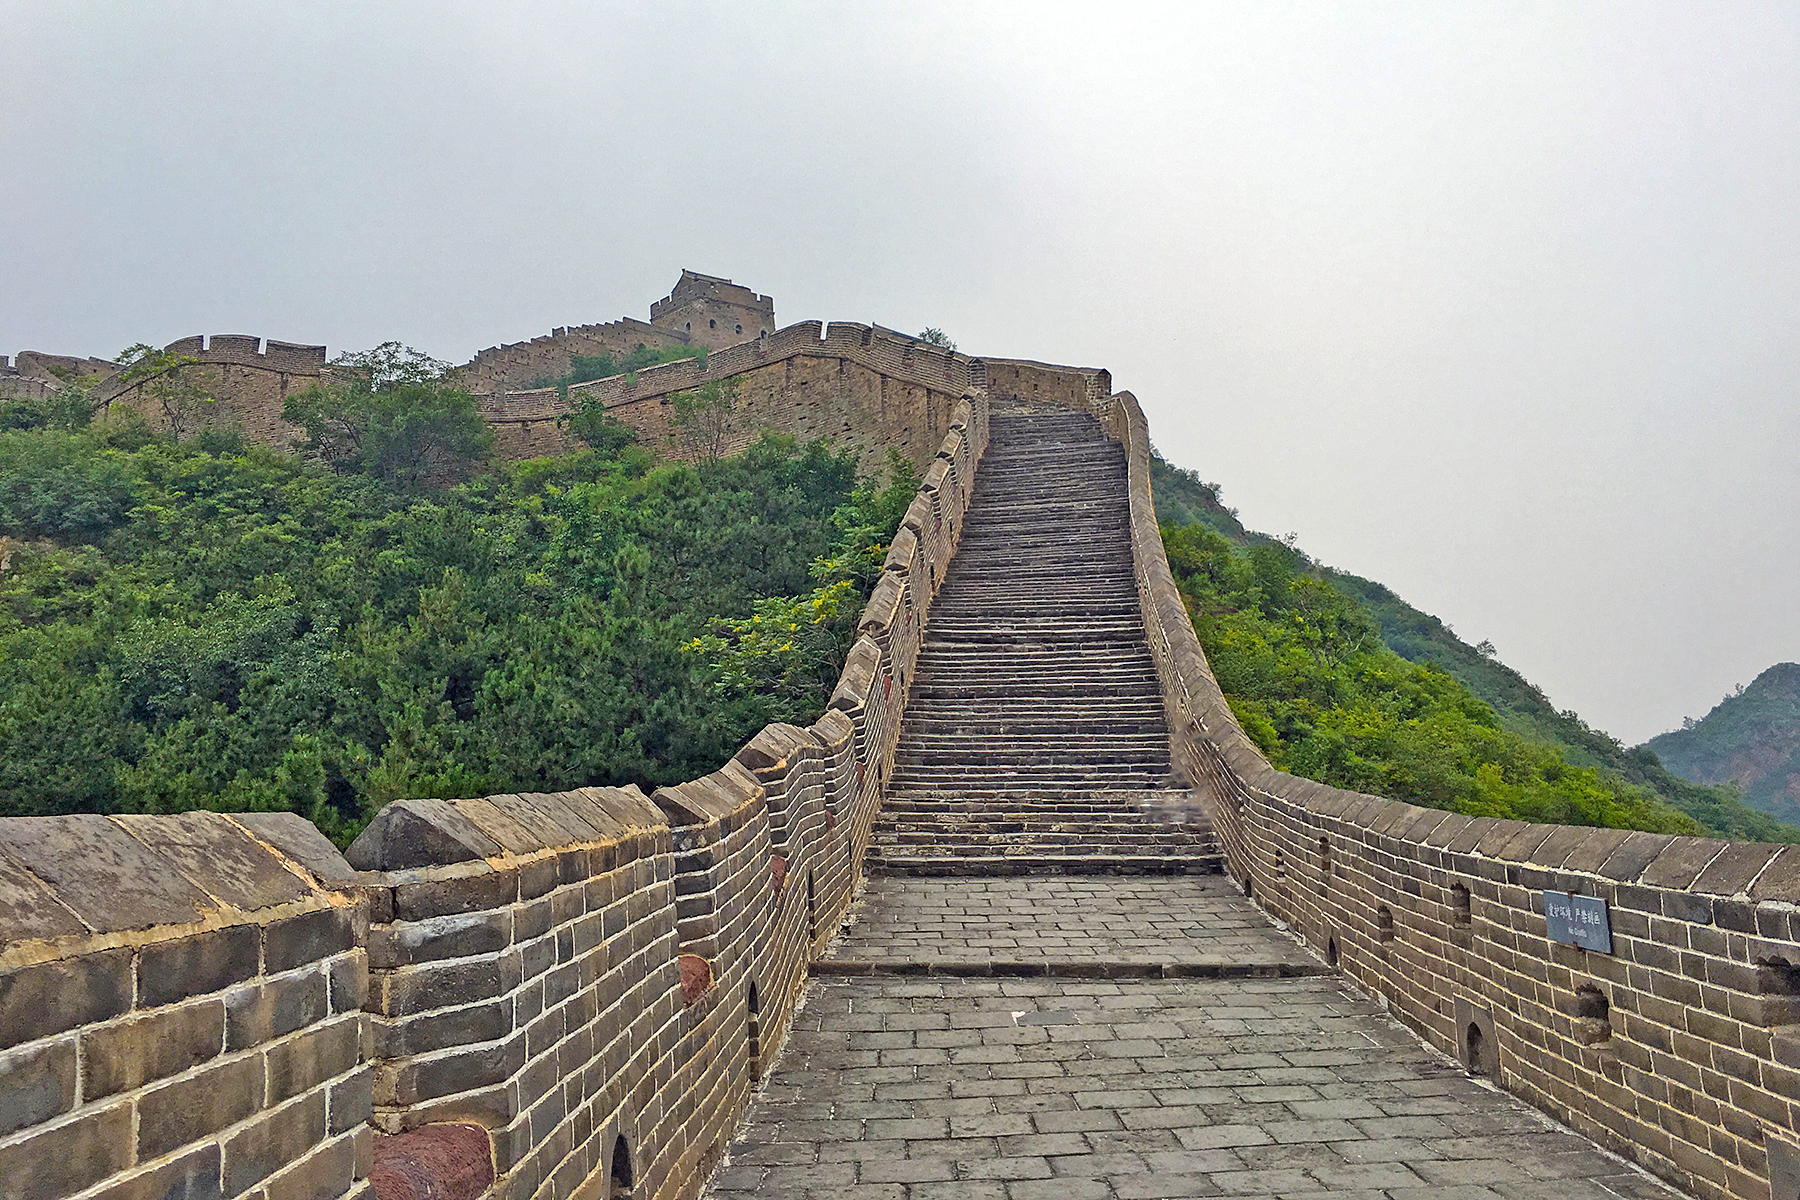 Insidertipps Chinesische Mauer: 5 Dinge, die man vor dem Besuch der Chinesischen Mauer wissen muss